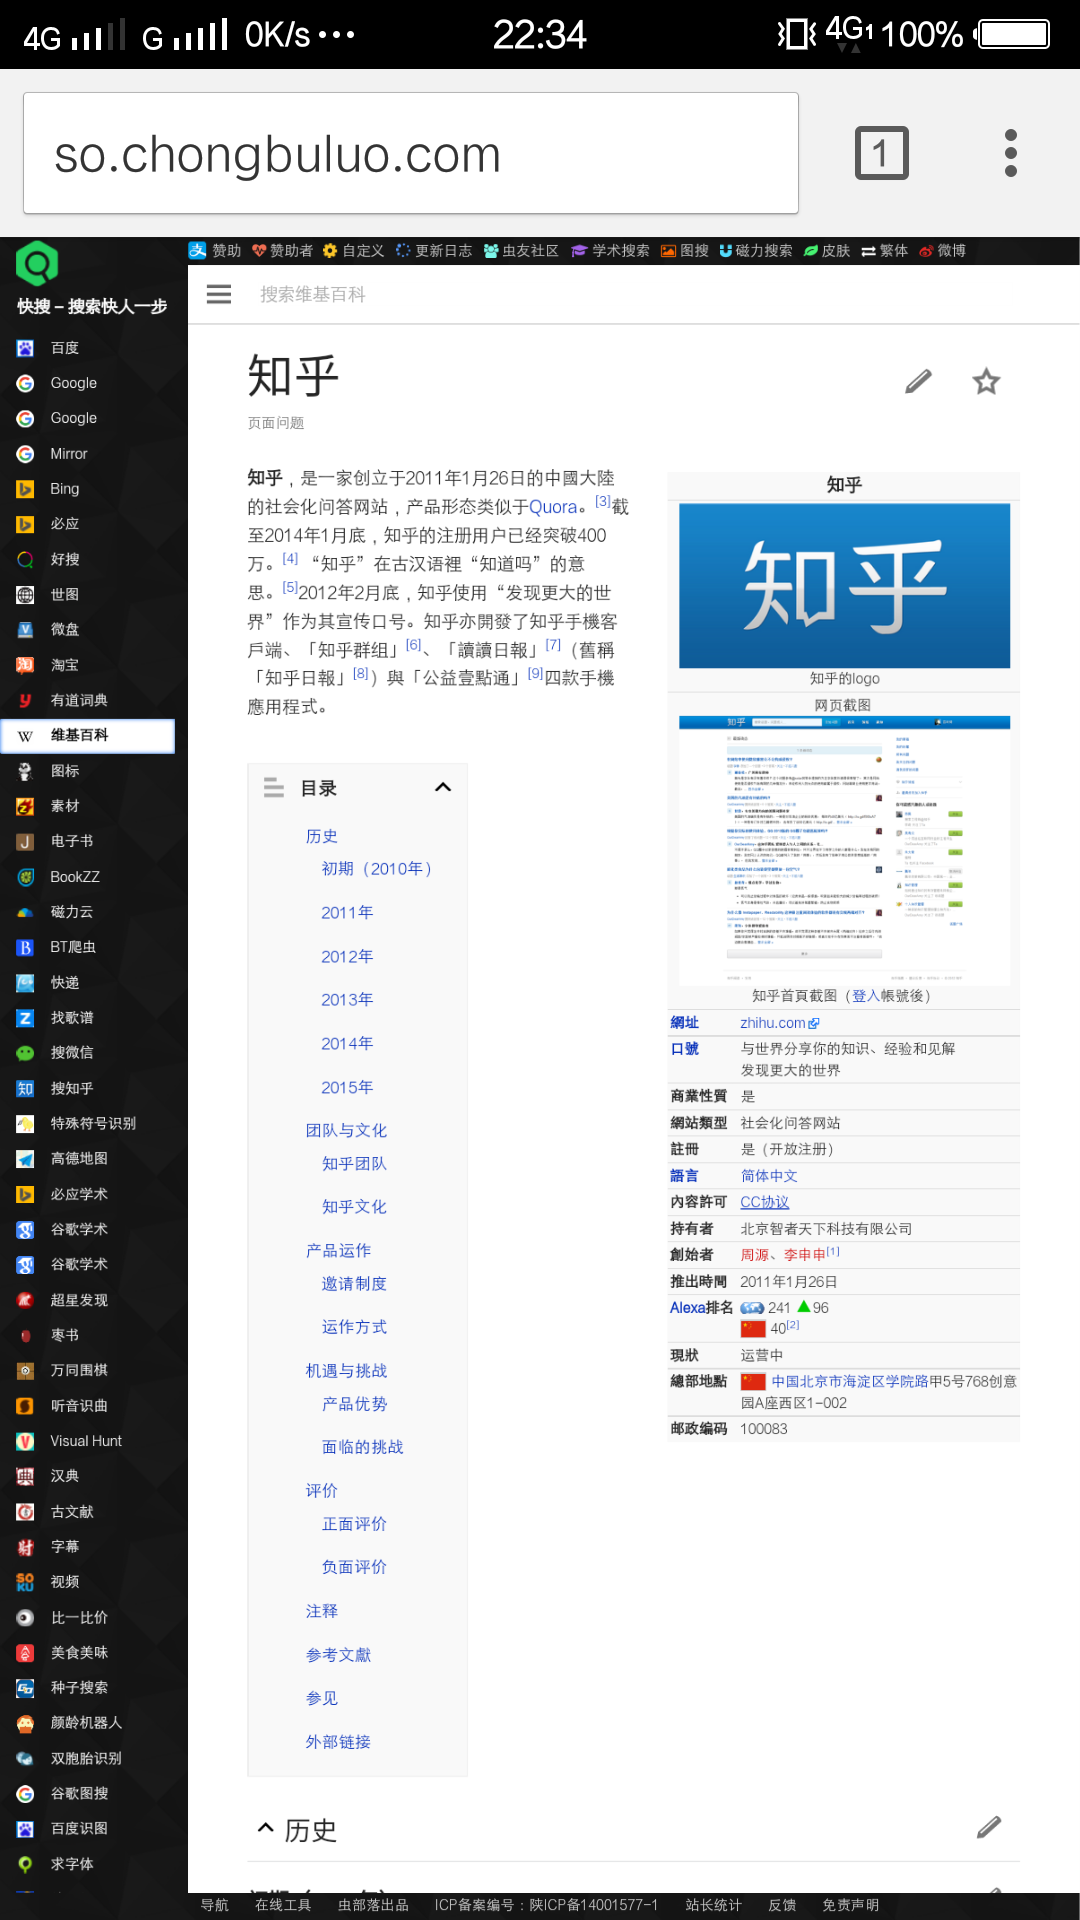 2015 年 9月份以后怎么浏览维基百科中文版? 